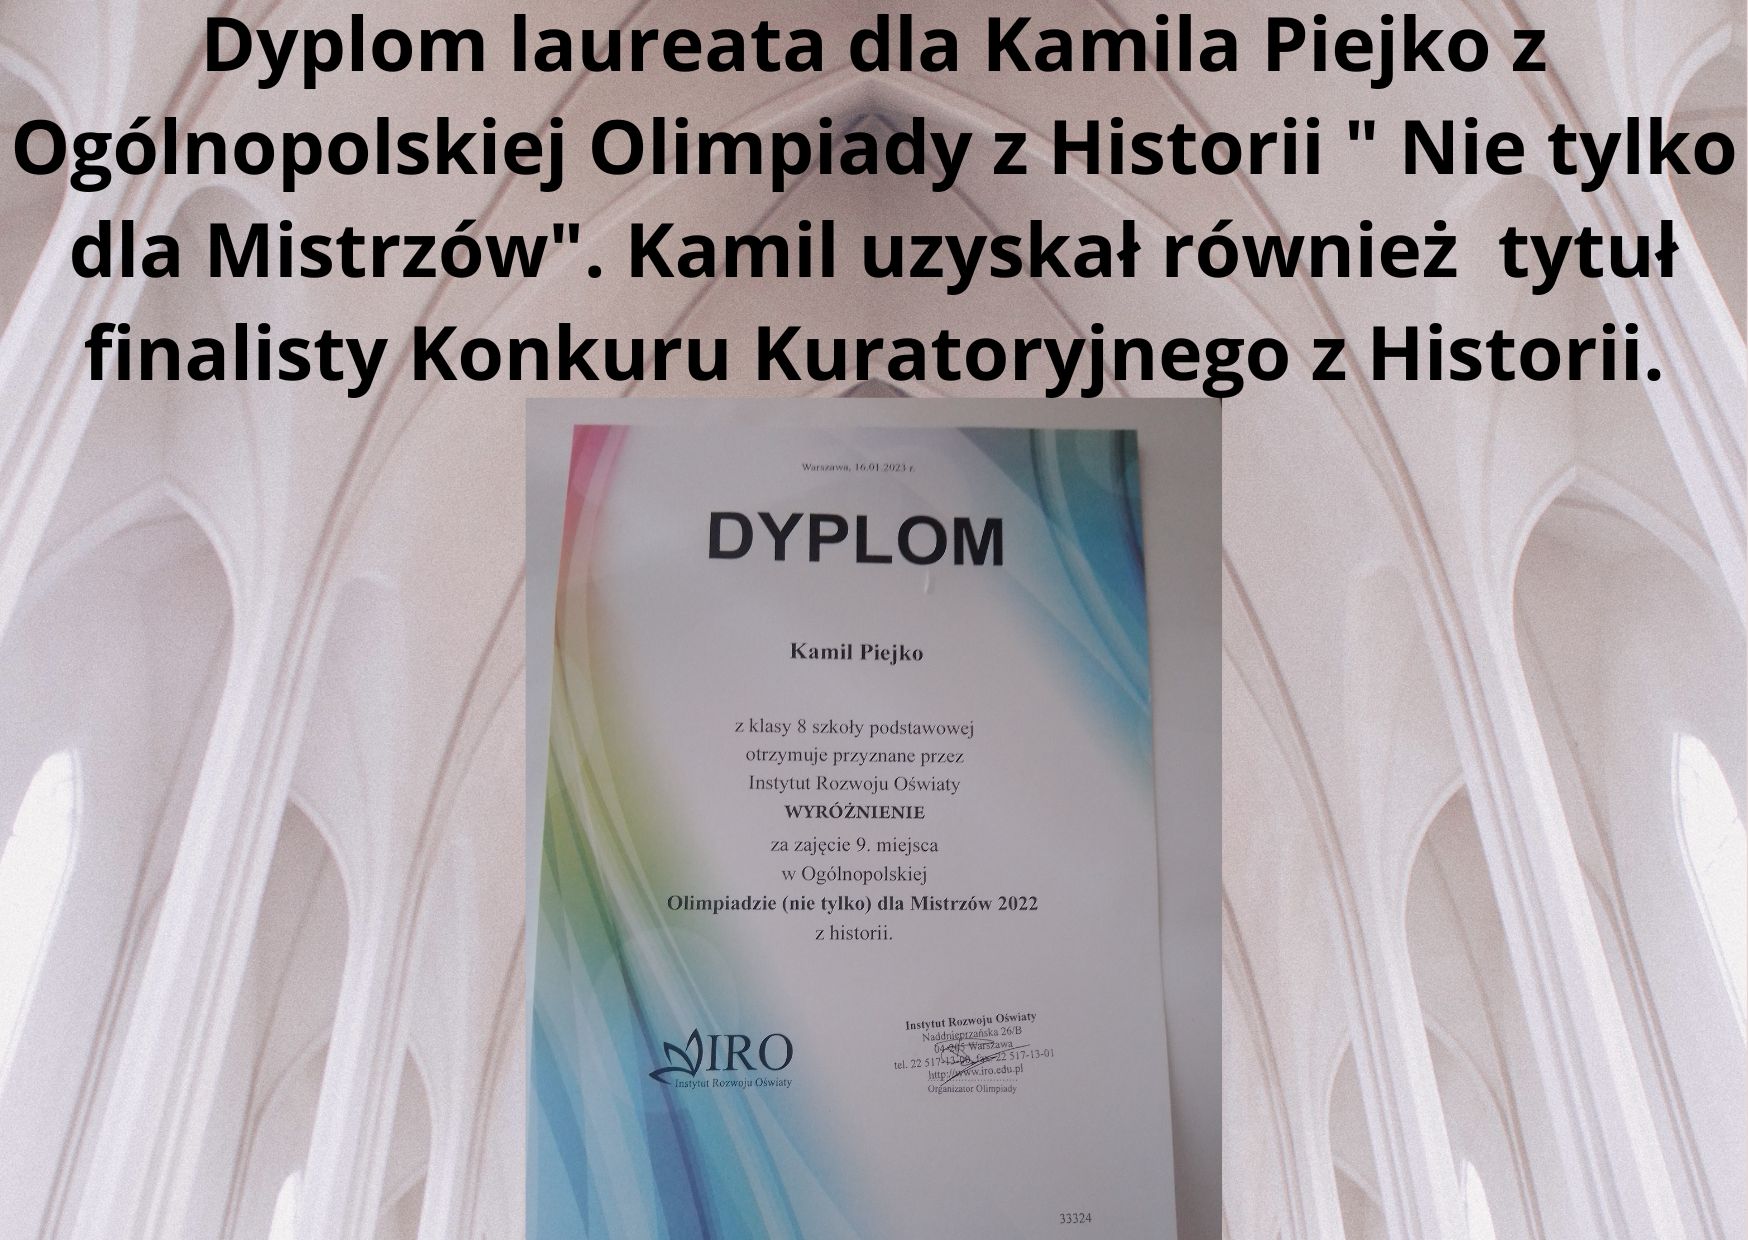 Dyplom laureata dla Kamila Piejko z Ogólnopolskiej Olimpiady z historii Nie tylko dla Mistrzów